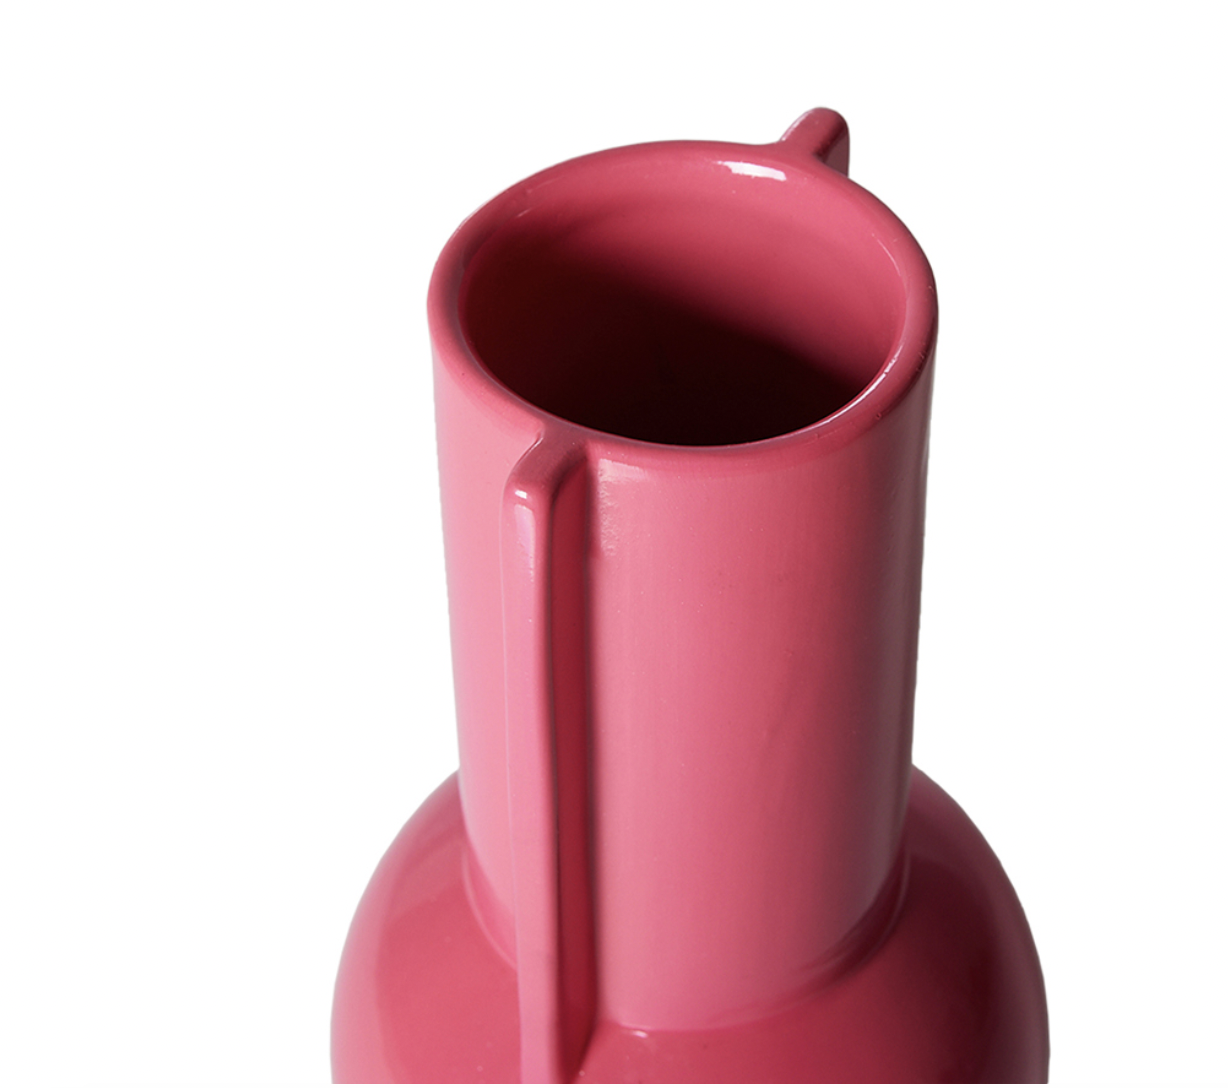 HKLIVING HKLIVING - Ceramic vaas hot pink ACE7169